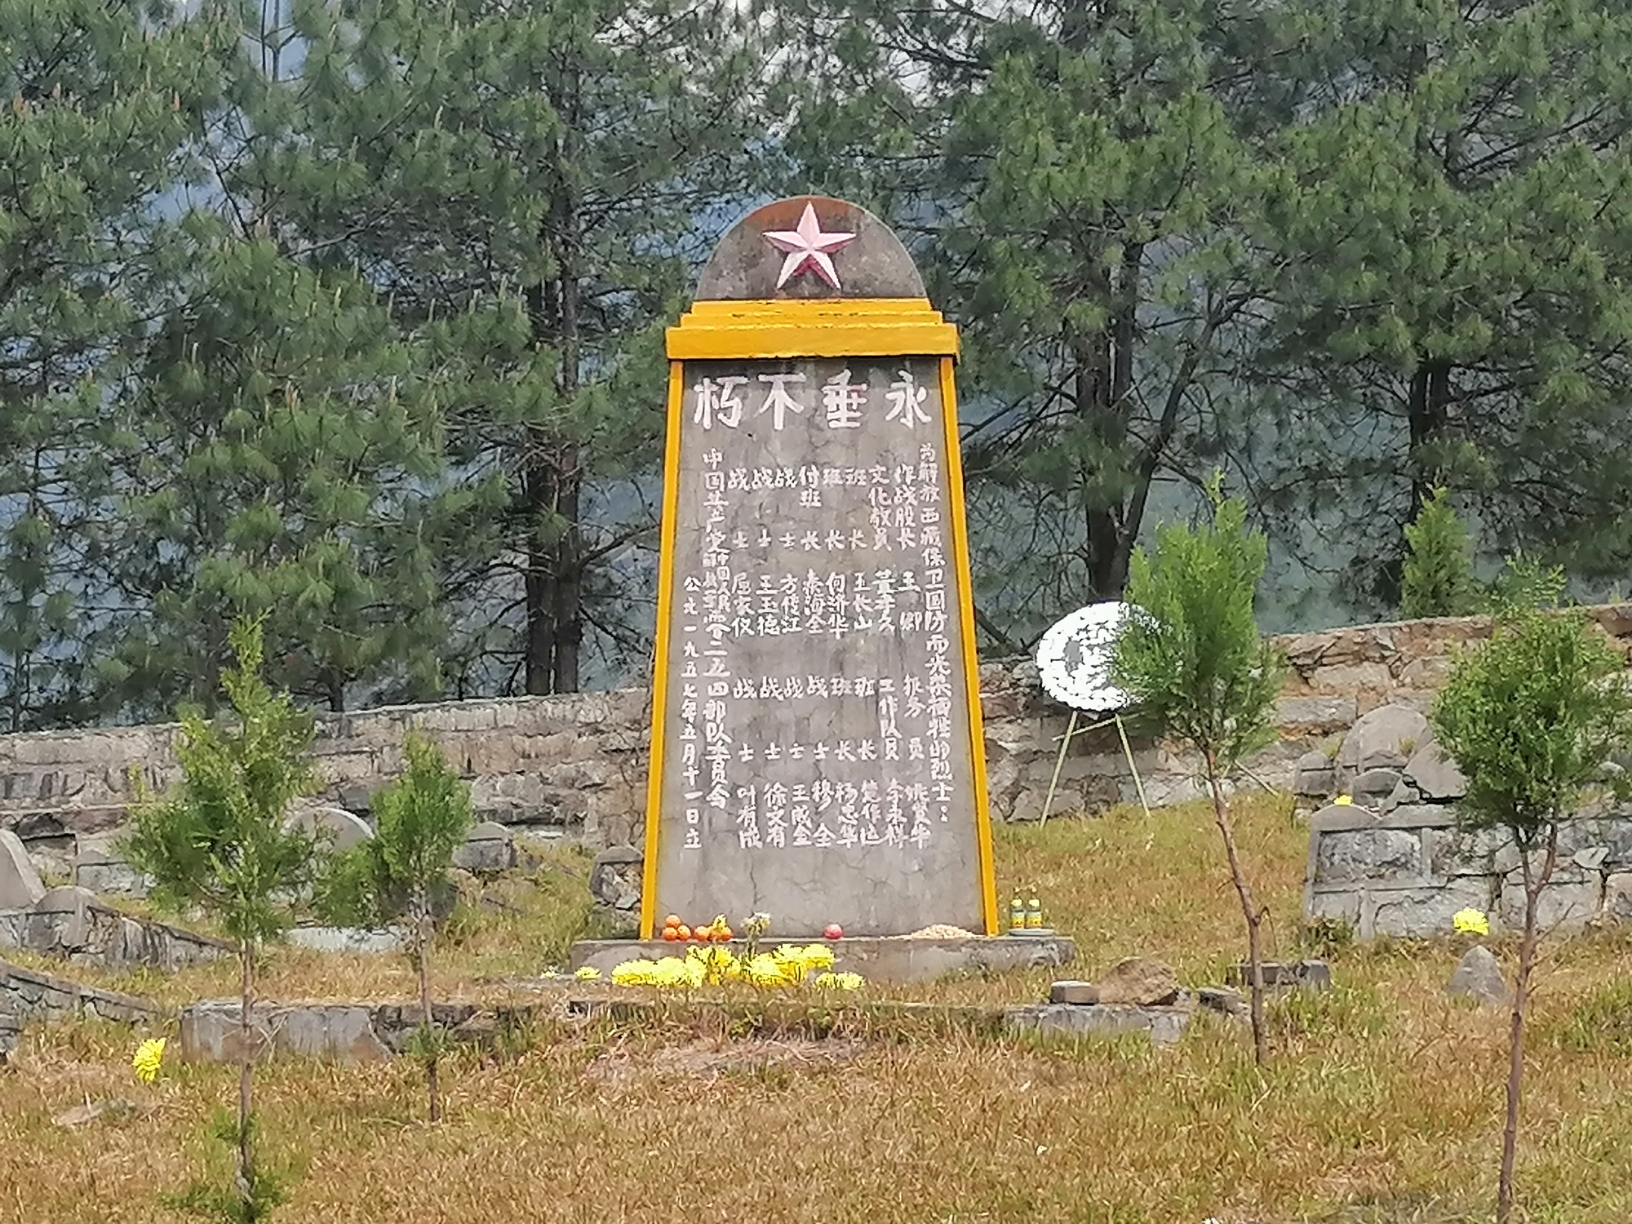 4月13日西藏上察隅一瓦弄一察隅一卓娃贡村一罗马村一日弄巴冰川一然乌镇。瓦弄有烈士陵园，青山处处埋忠